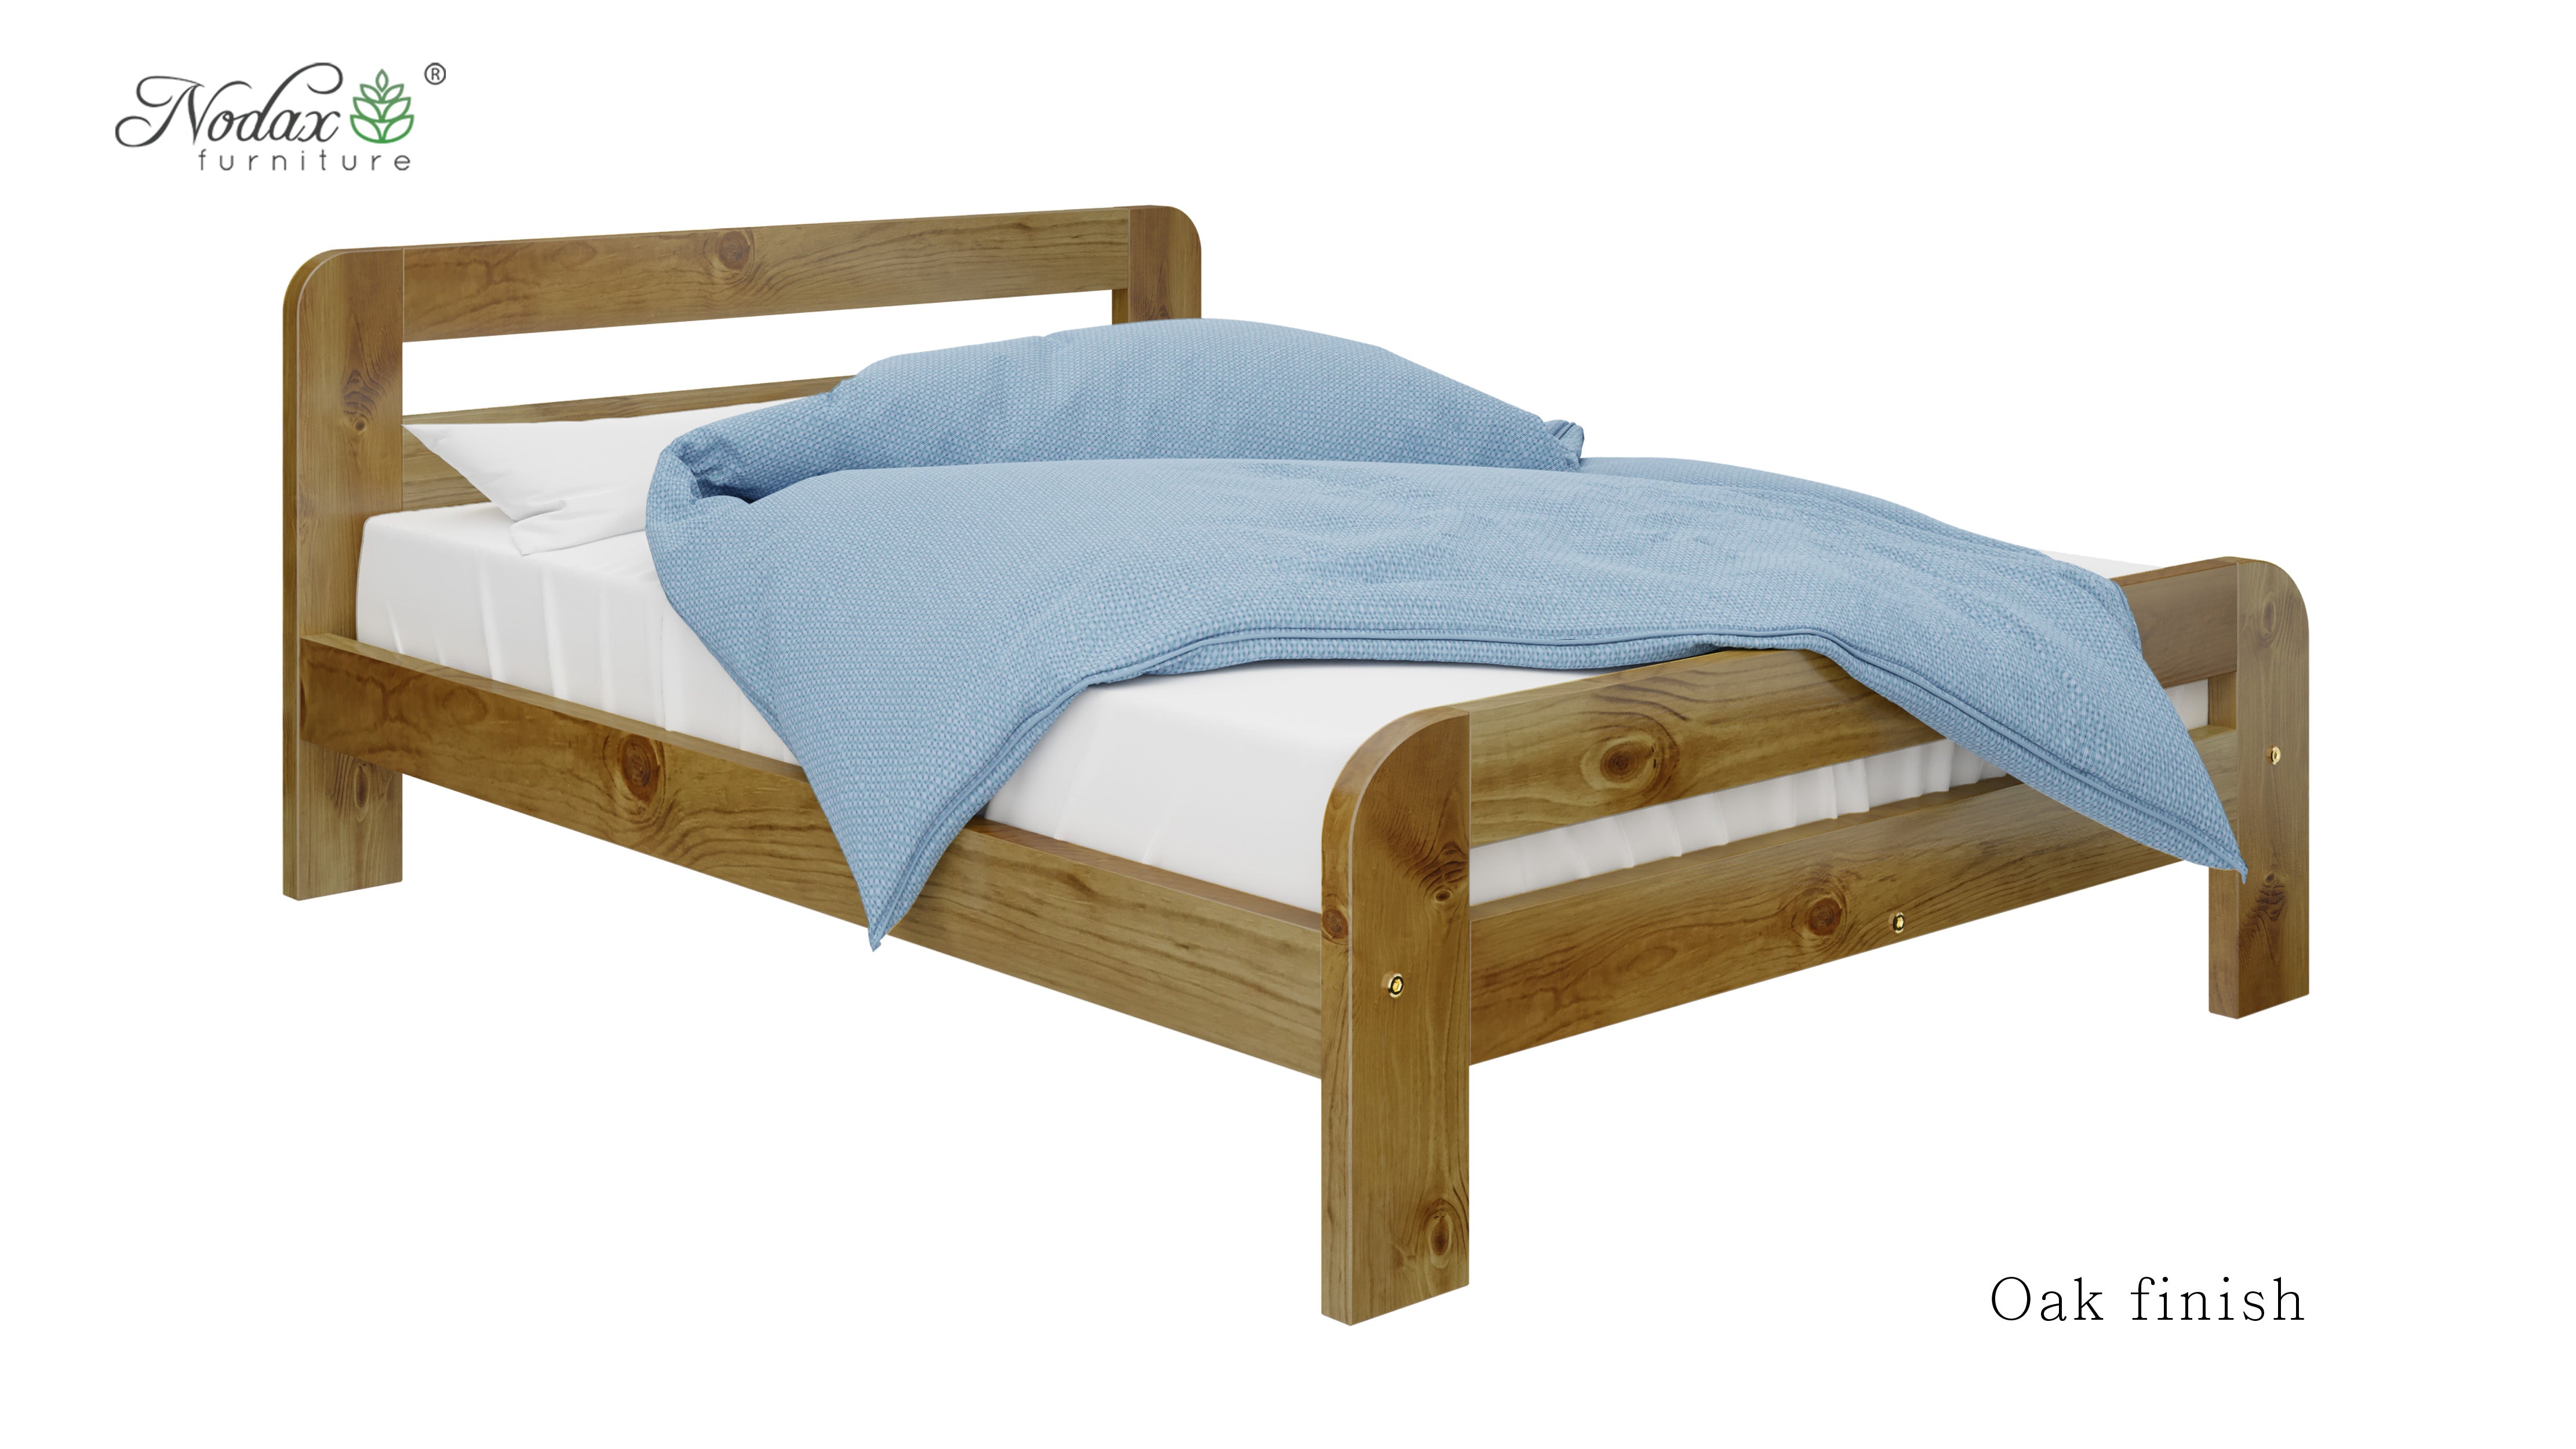 Wooden-bed-frame-Nordic-Sky-4ft